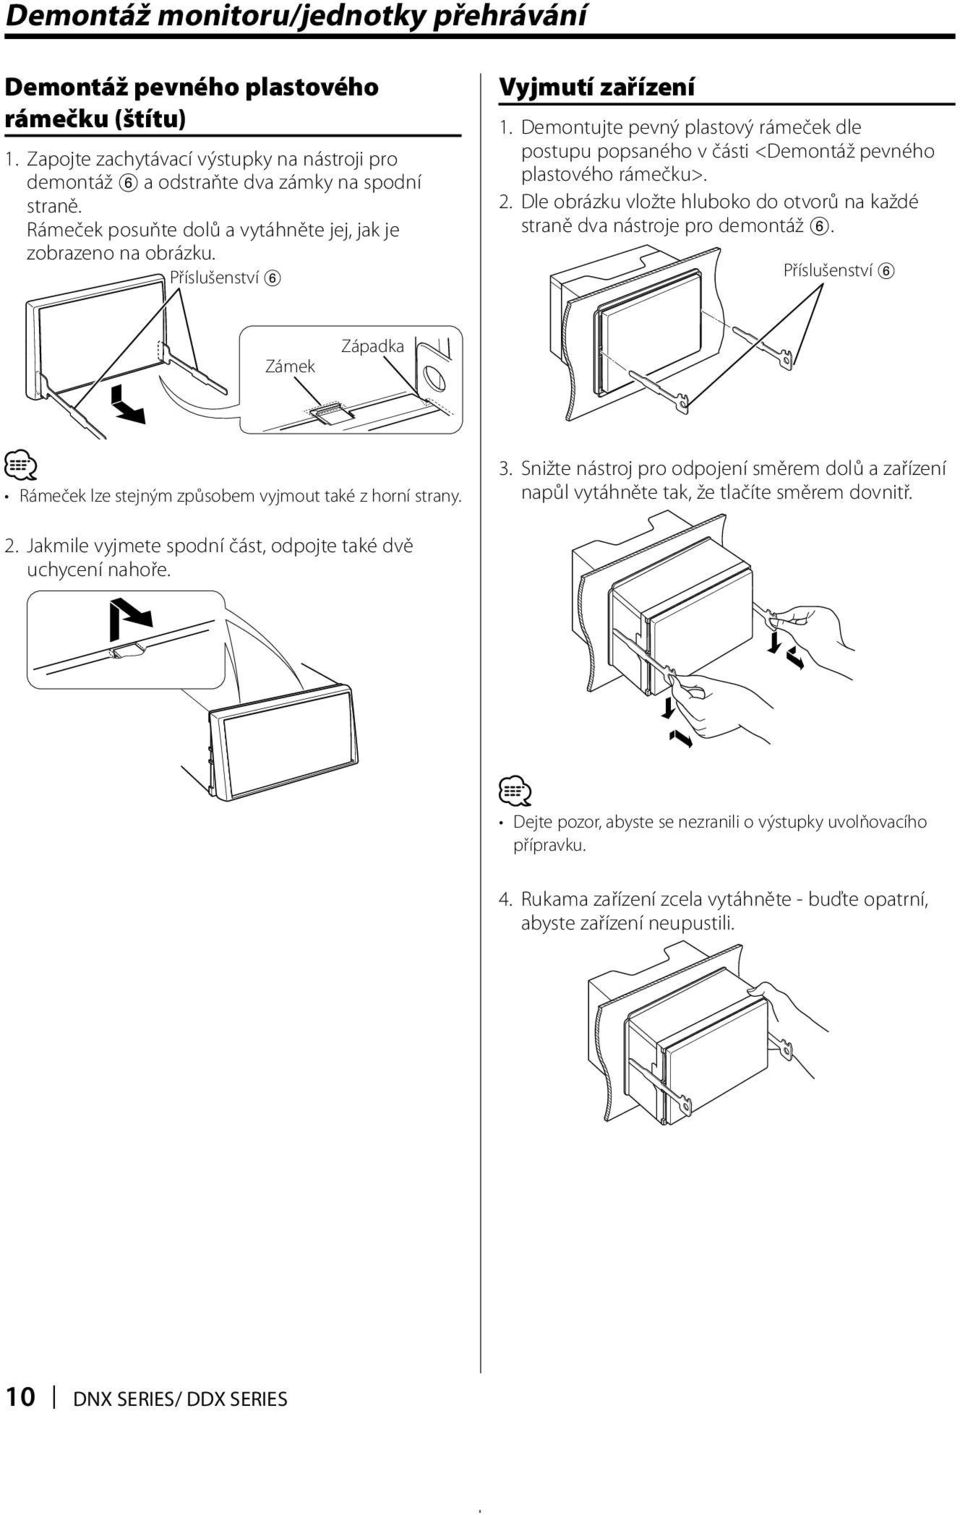 Demontujte pevný plastový rámeček dle postupu popsaného v části <Demontáž pevného plastového rámečku>. 2. Dle obrázku vložte hluboko do otvorů na každé straně dva nástroje pro demontáž 6.